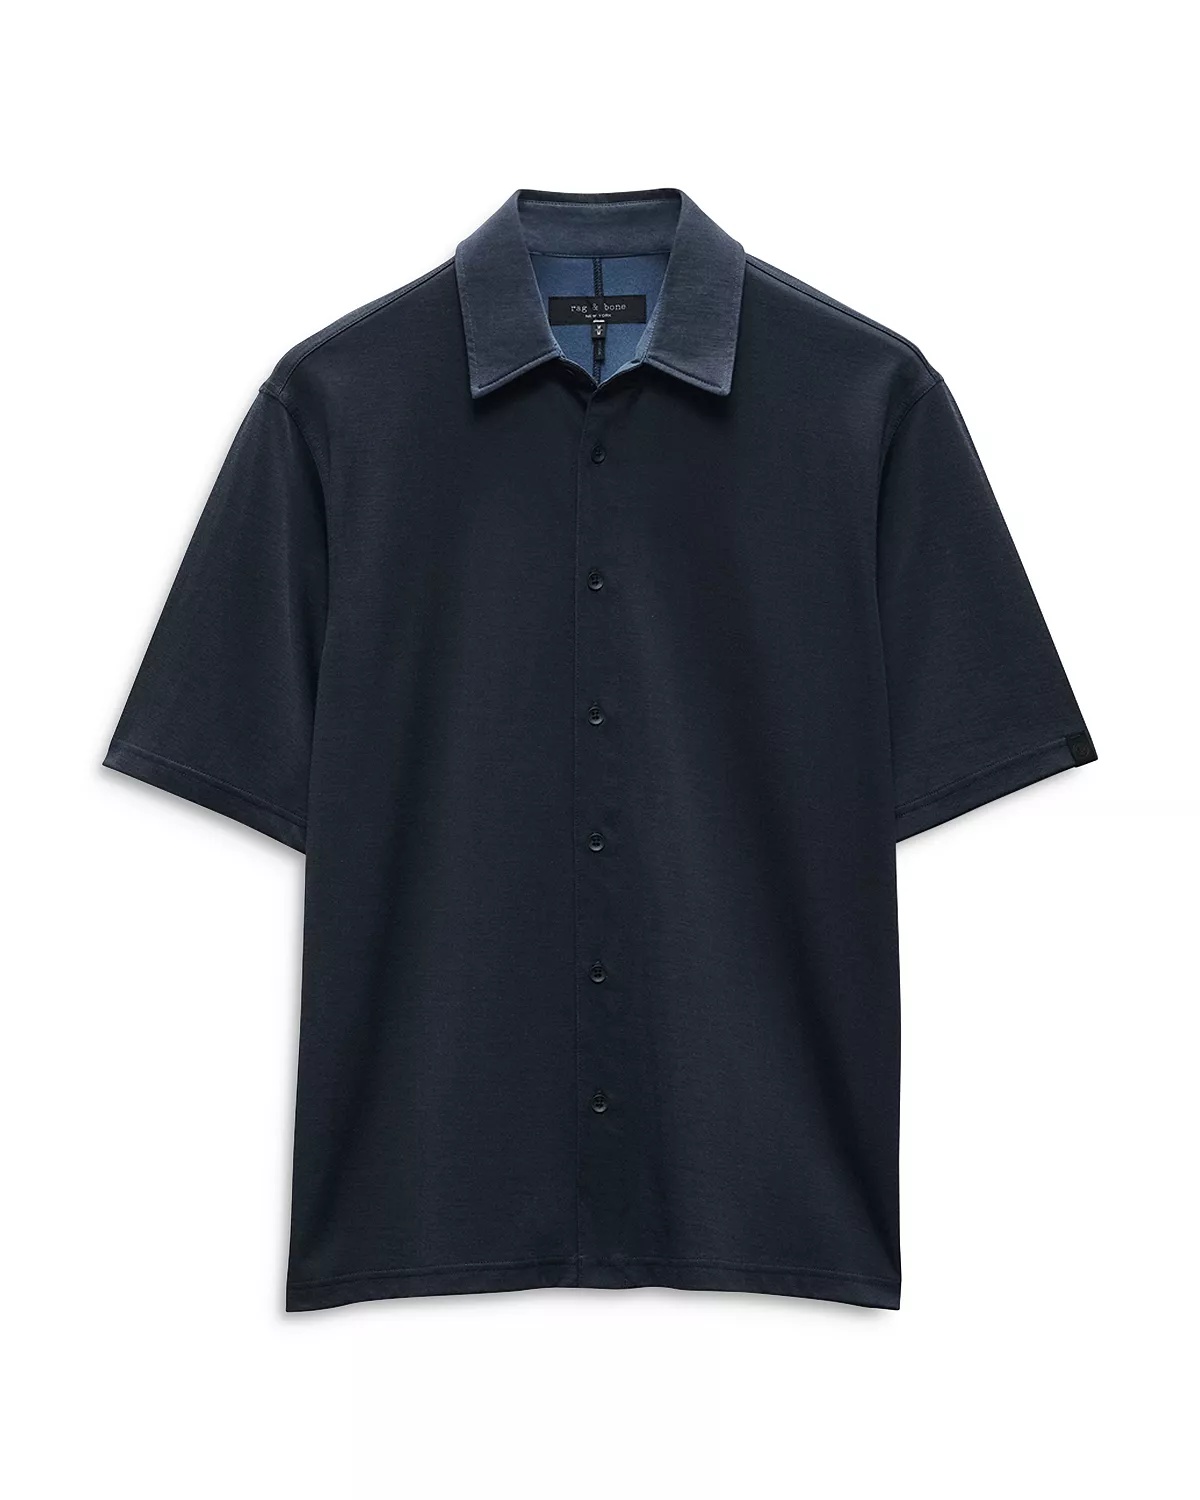 Dalton Knit Shirt - 6